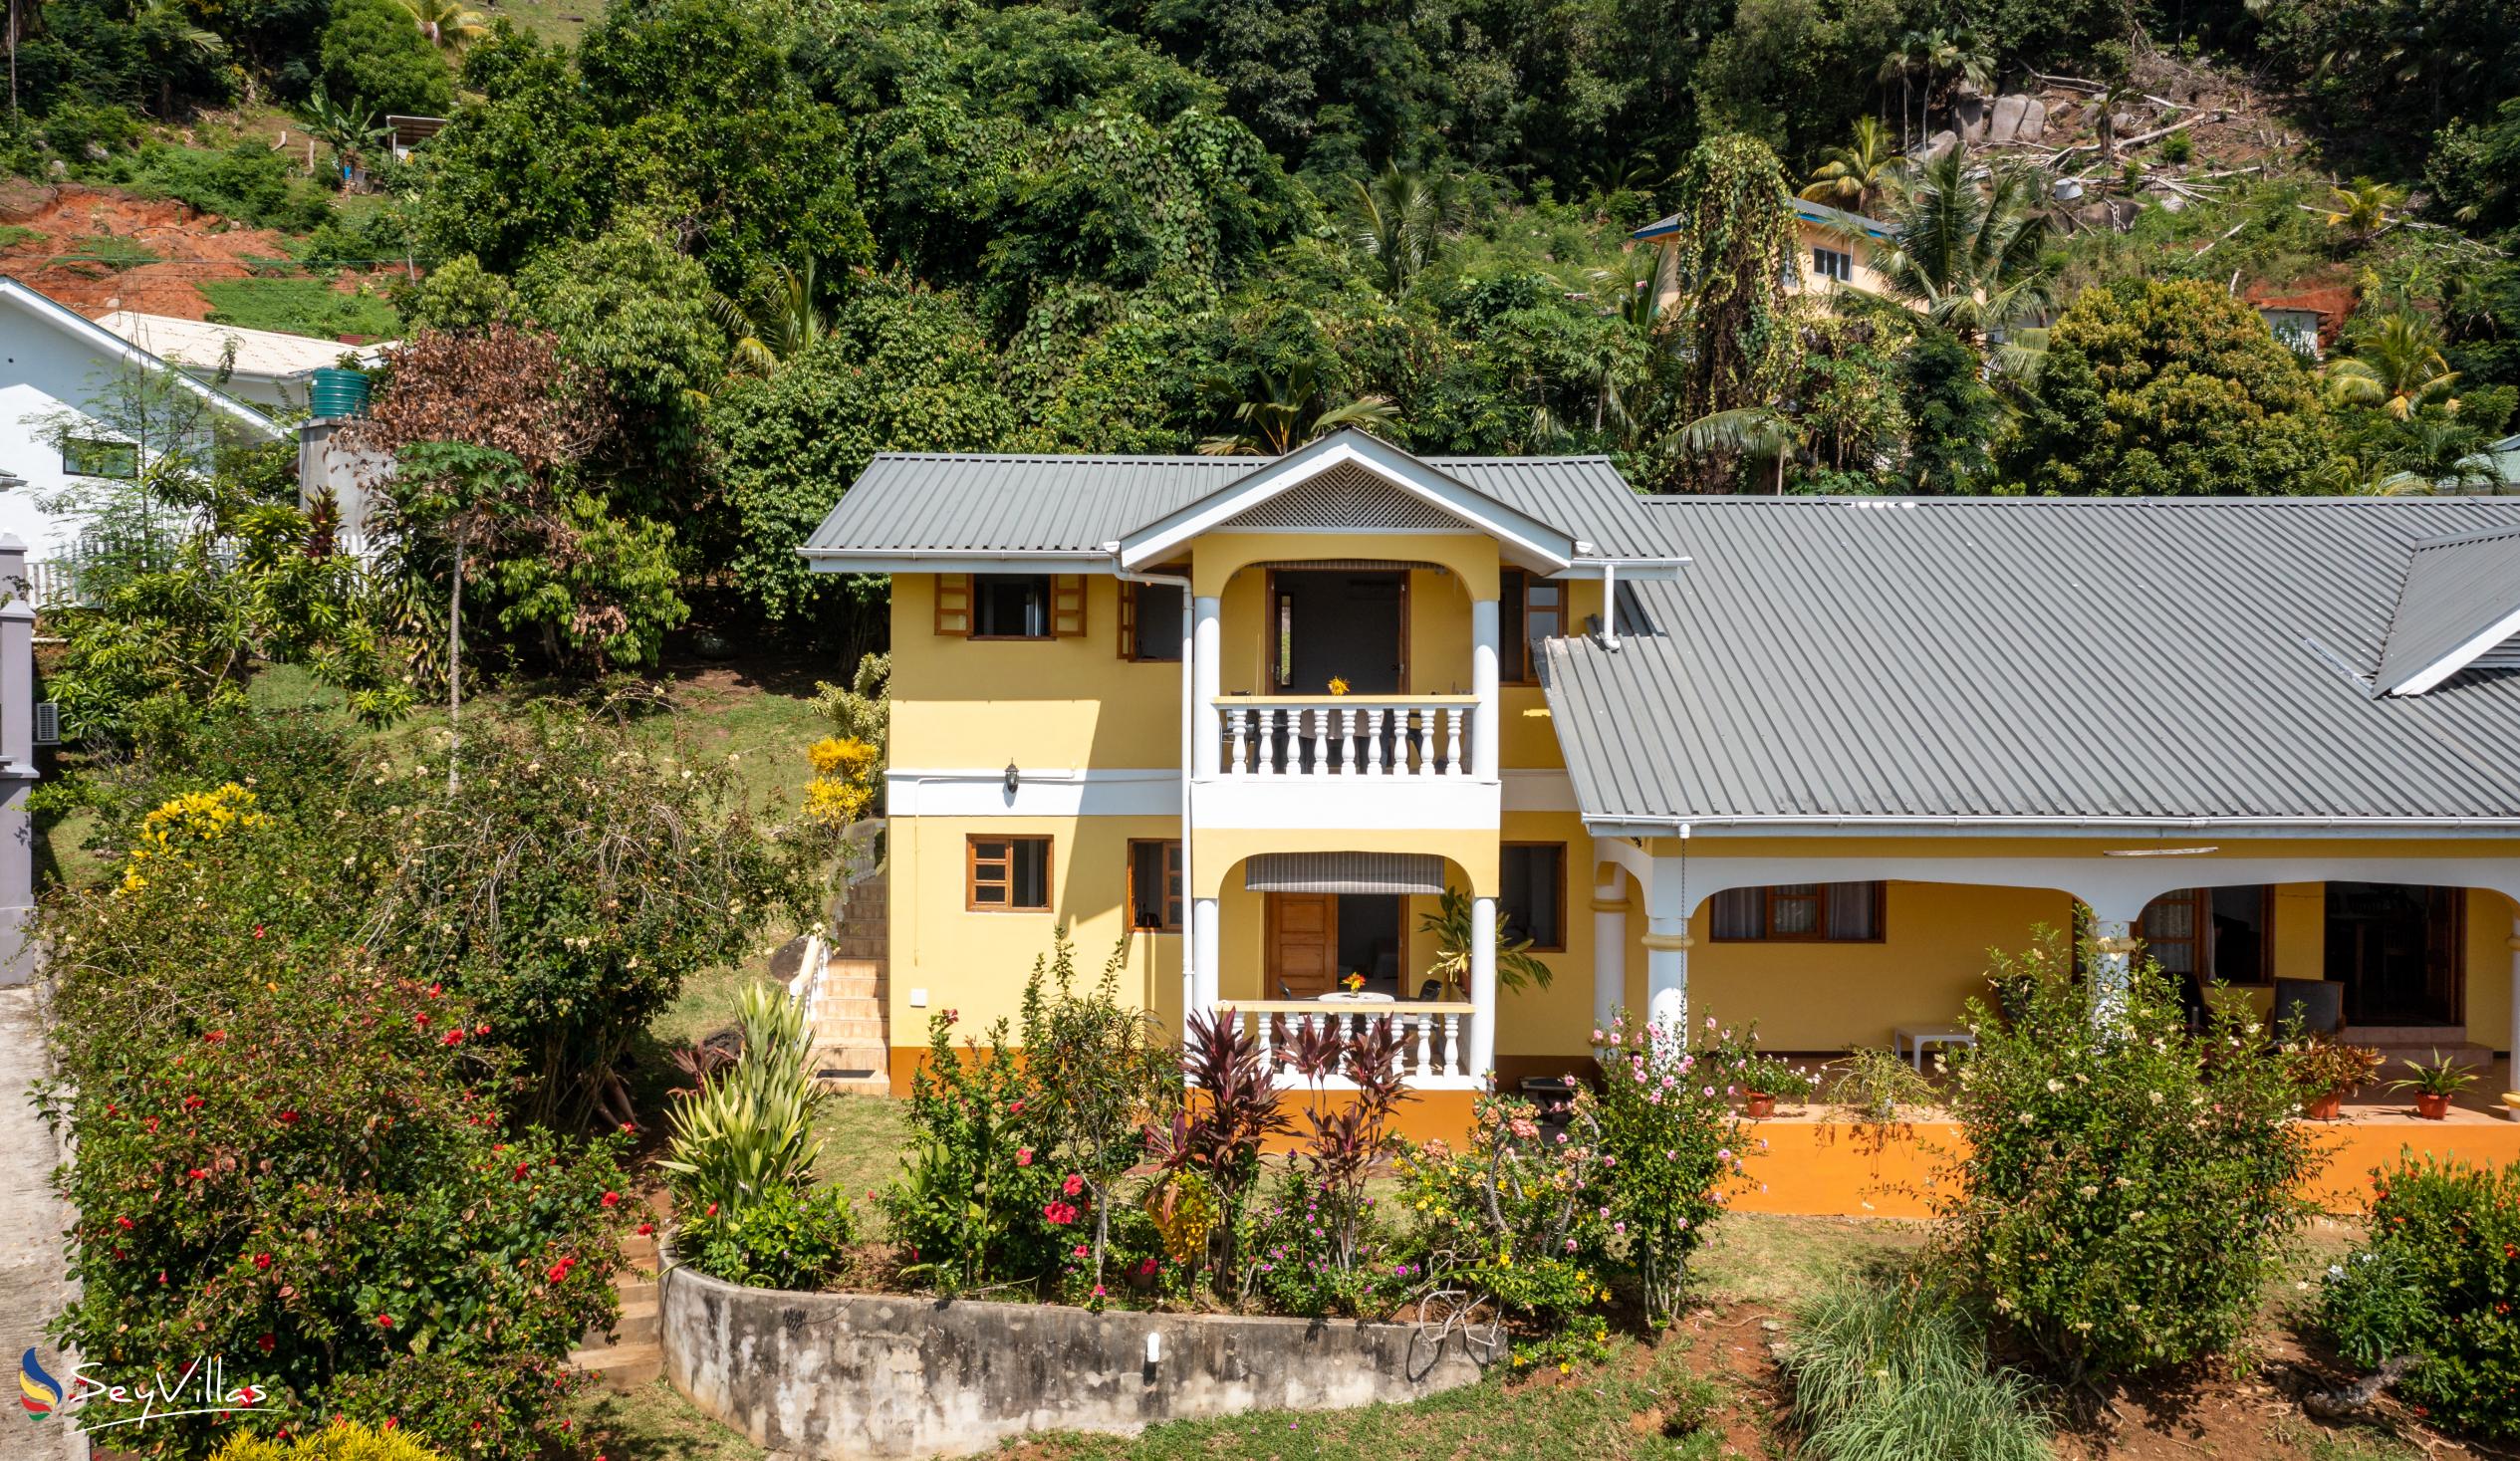 Foto 6: Maison Marikel - Extérieur - Mahé (Seychelles)